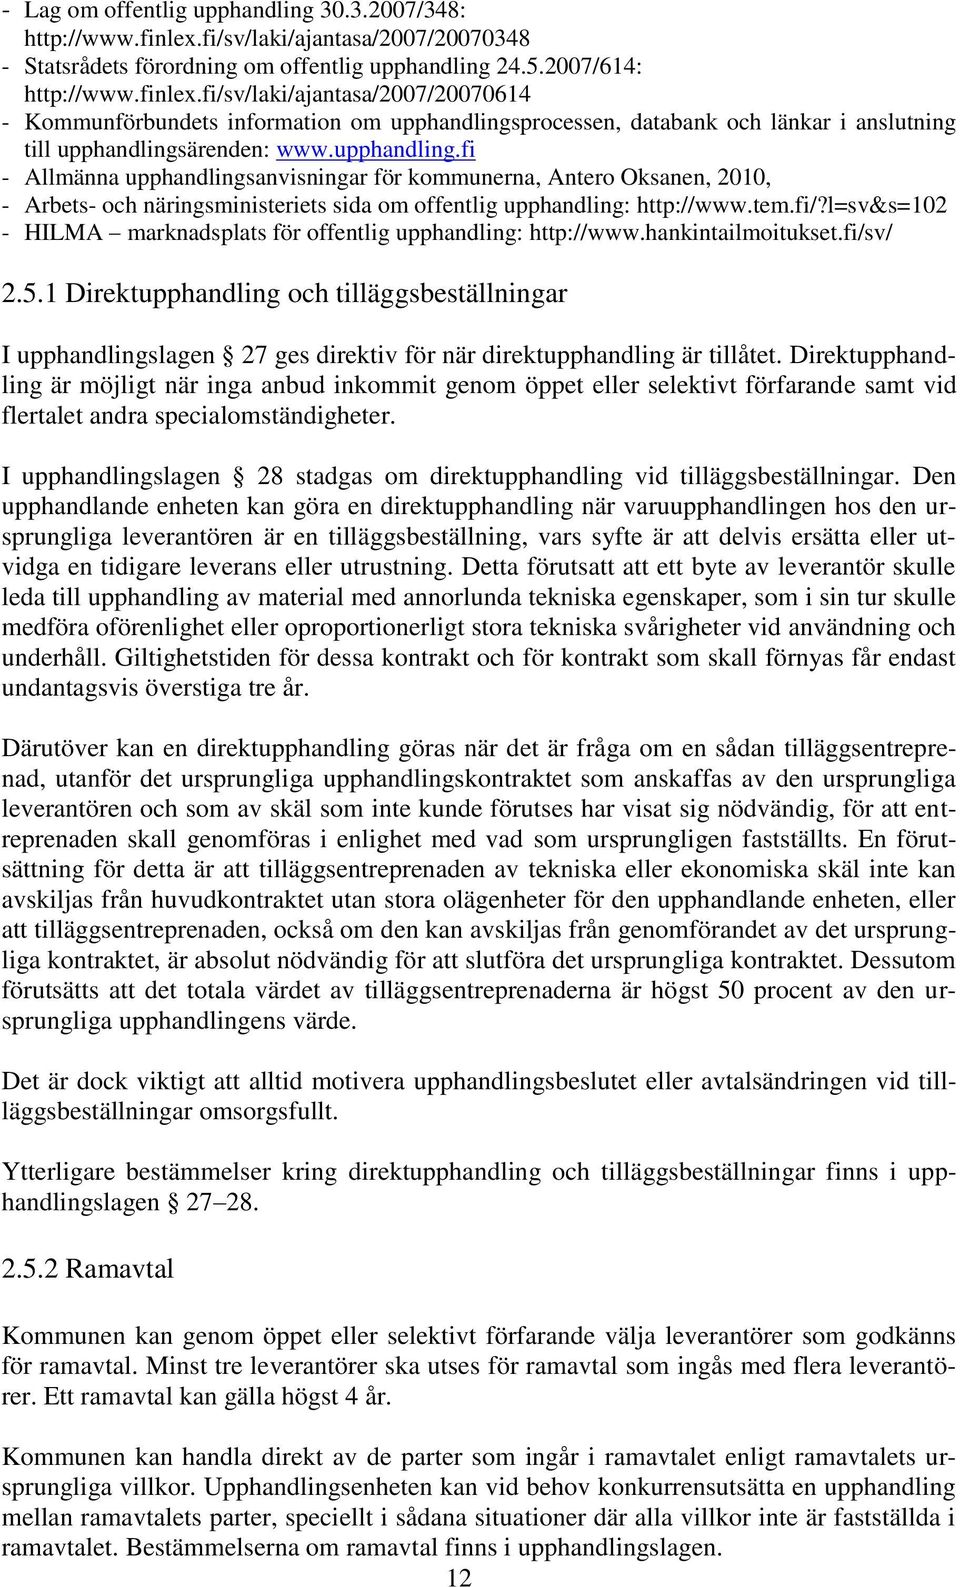 fi/sv/laki/ajantasa/2007/20070614 - Kommunförbundets information om upphandlings